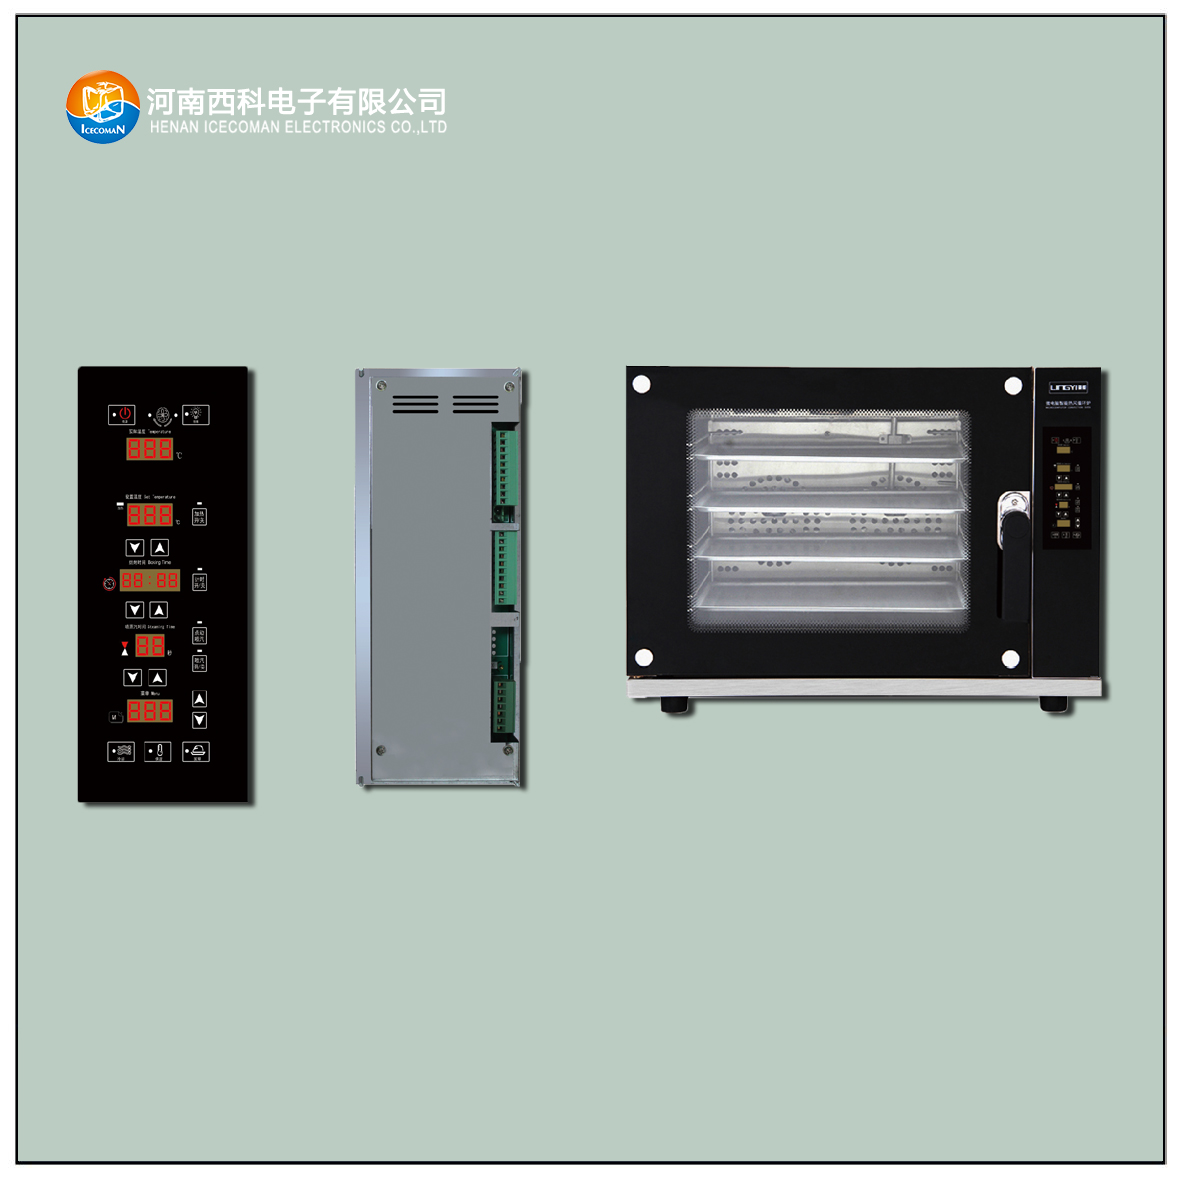 HPKX-SMG-C 烘焙烤箱控制器 